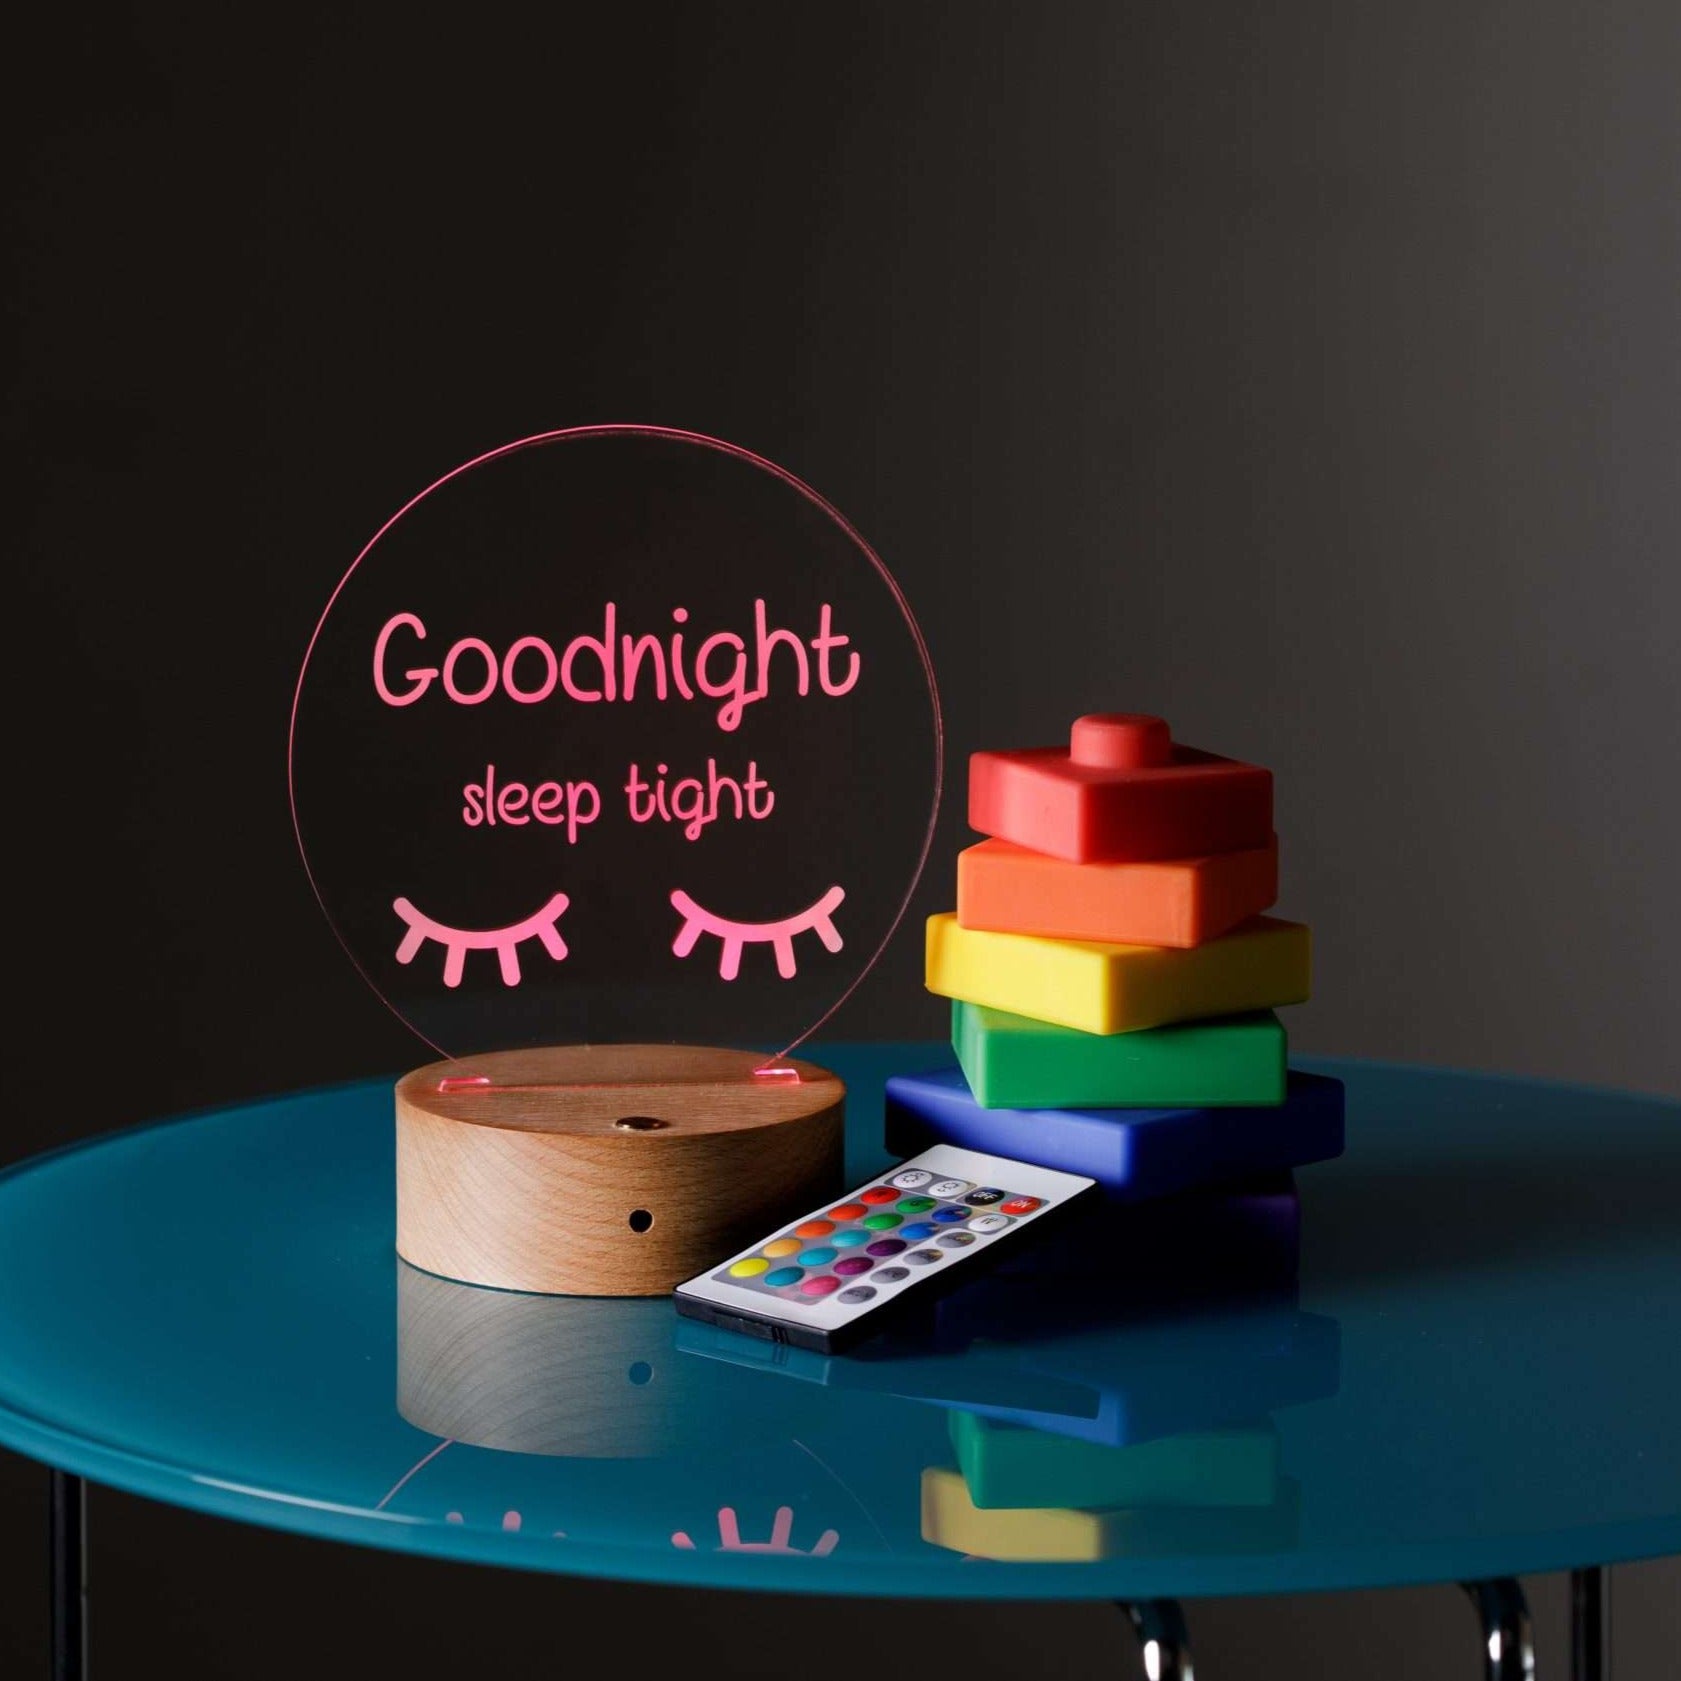 Goodnight Sleep Tight Night Light with Wooden Base